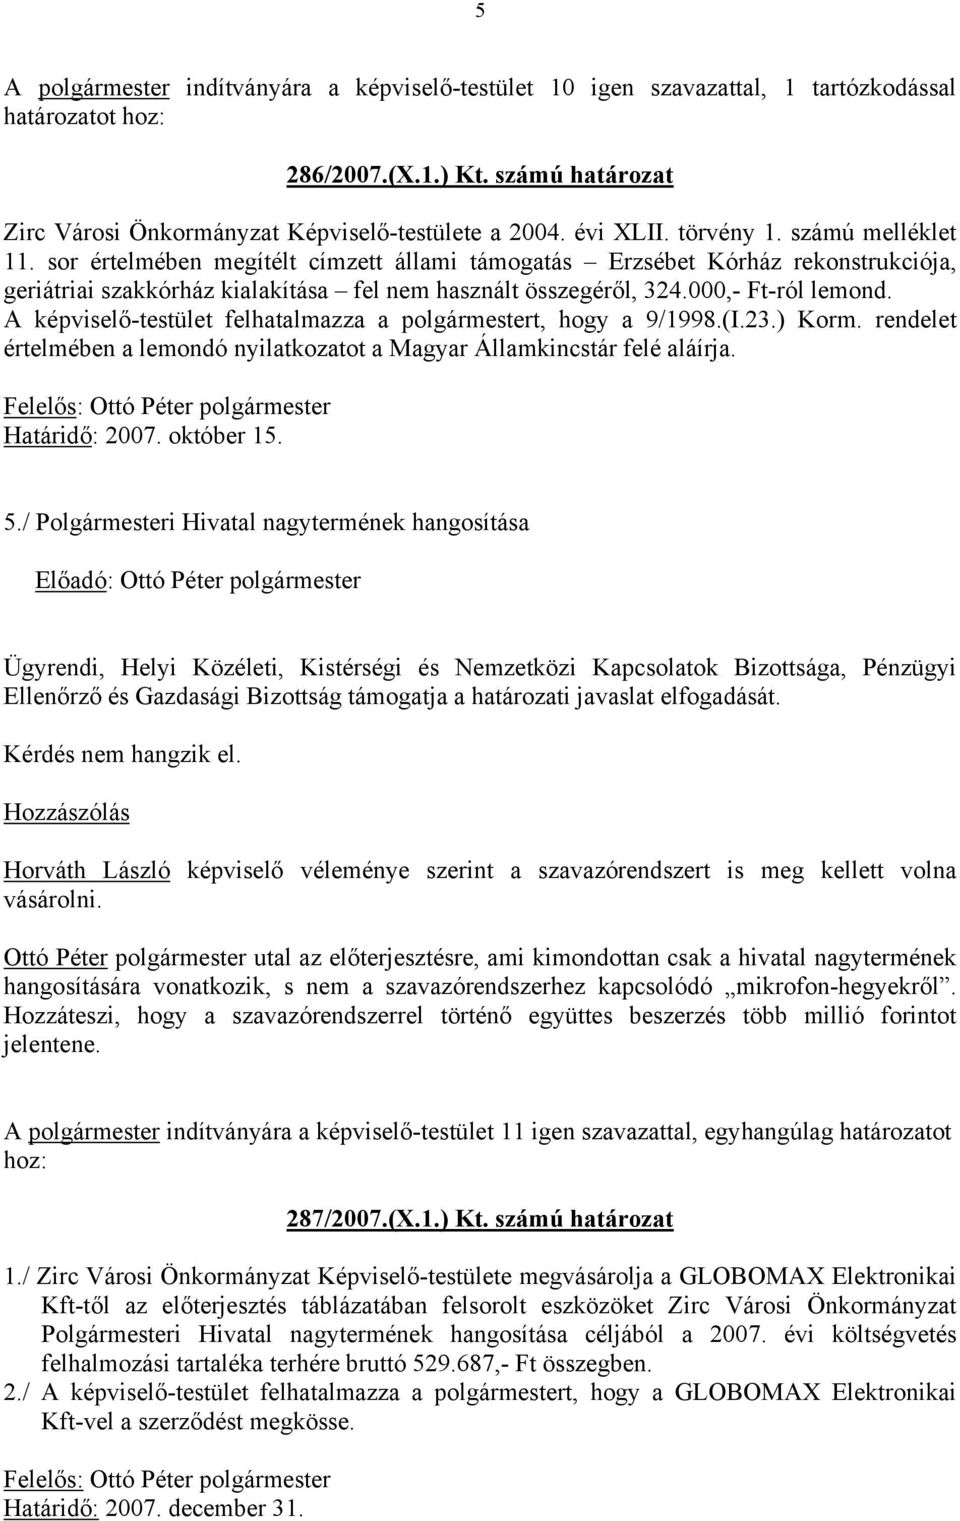 000,- Ft-ról lemond. A képviselő-testület felhatalmazza a polgármestert, hogy a 9/1998.(I.23.) Korm. rendelet értelmében a lemondó nyilatkozatot a Magyar Államkincstár felé aláírja.